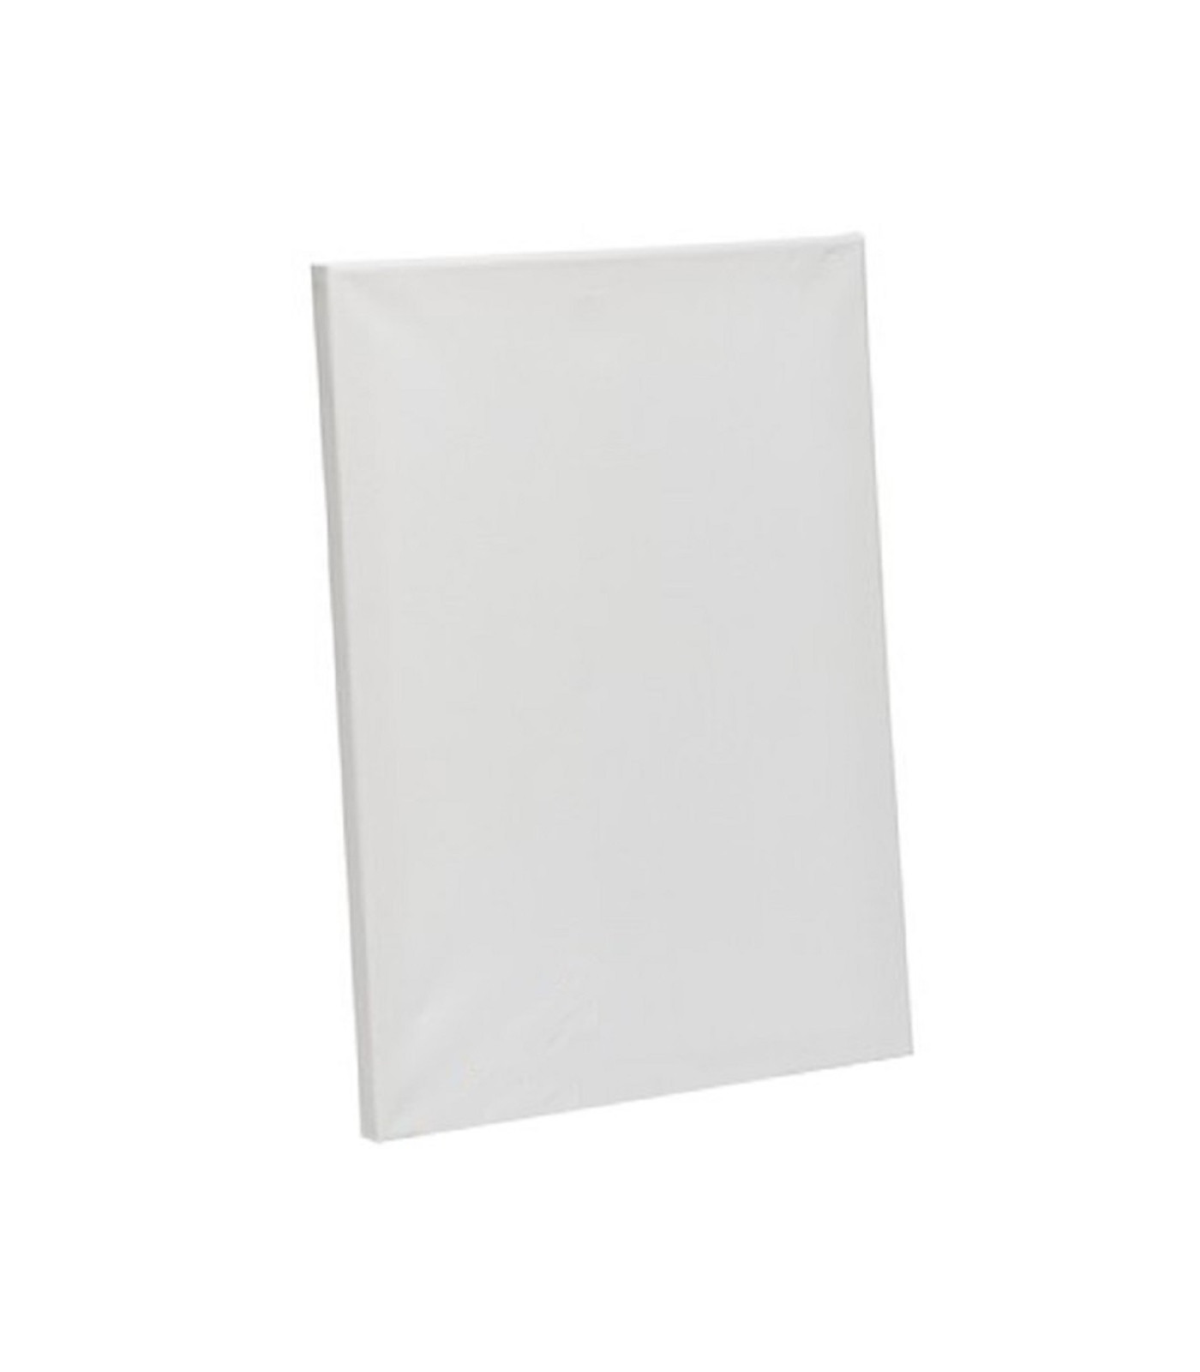 Lienzo Blanco 30 x 40 cm – Partte